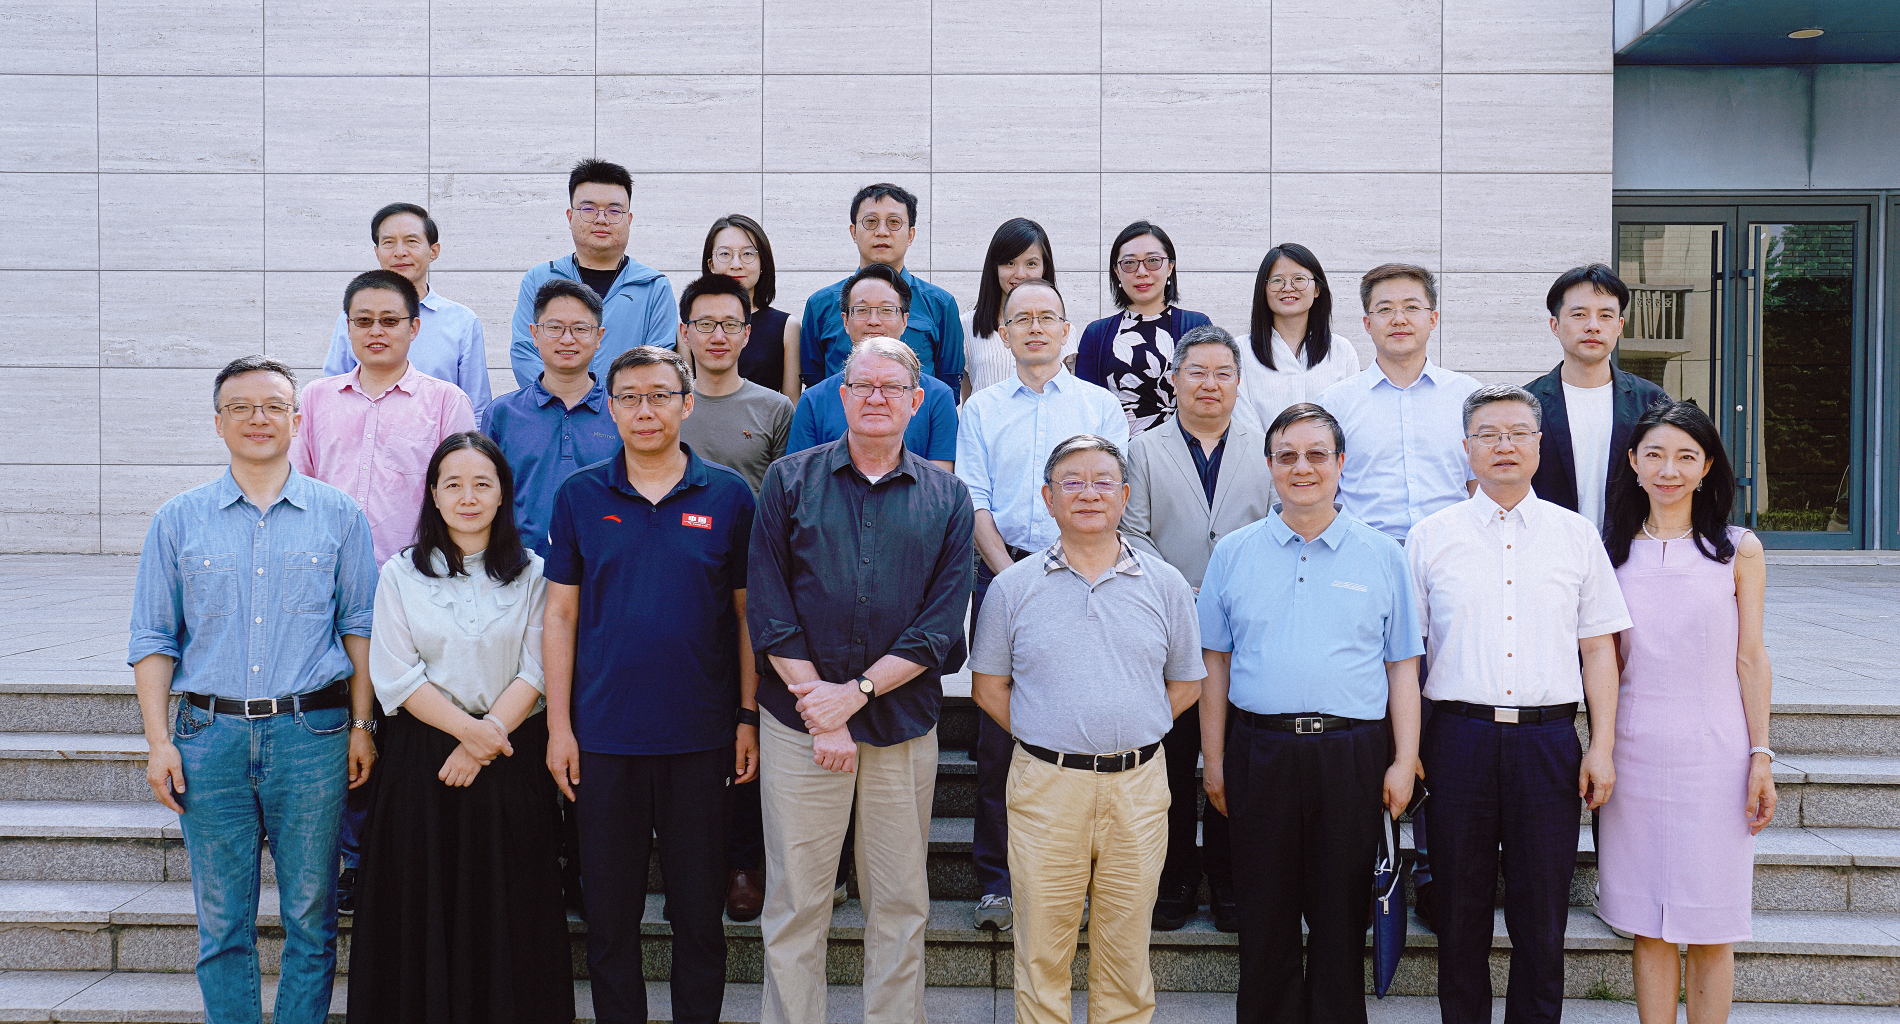 第一届“人工智能与中国国际关系学”实验室联合论坛顺利举行